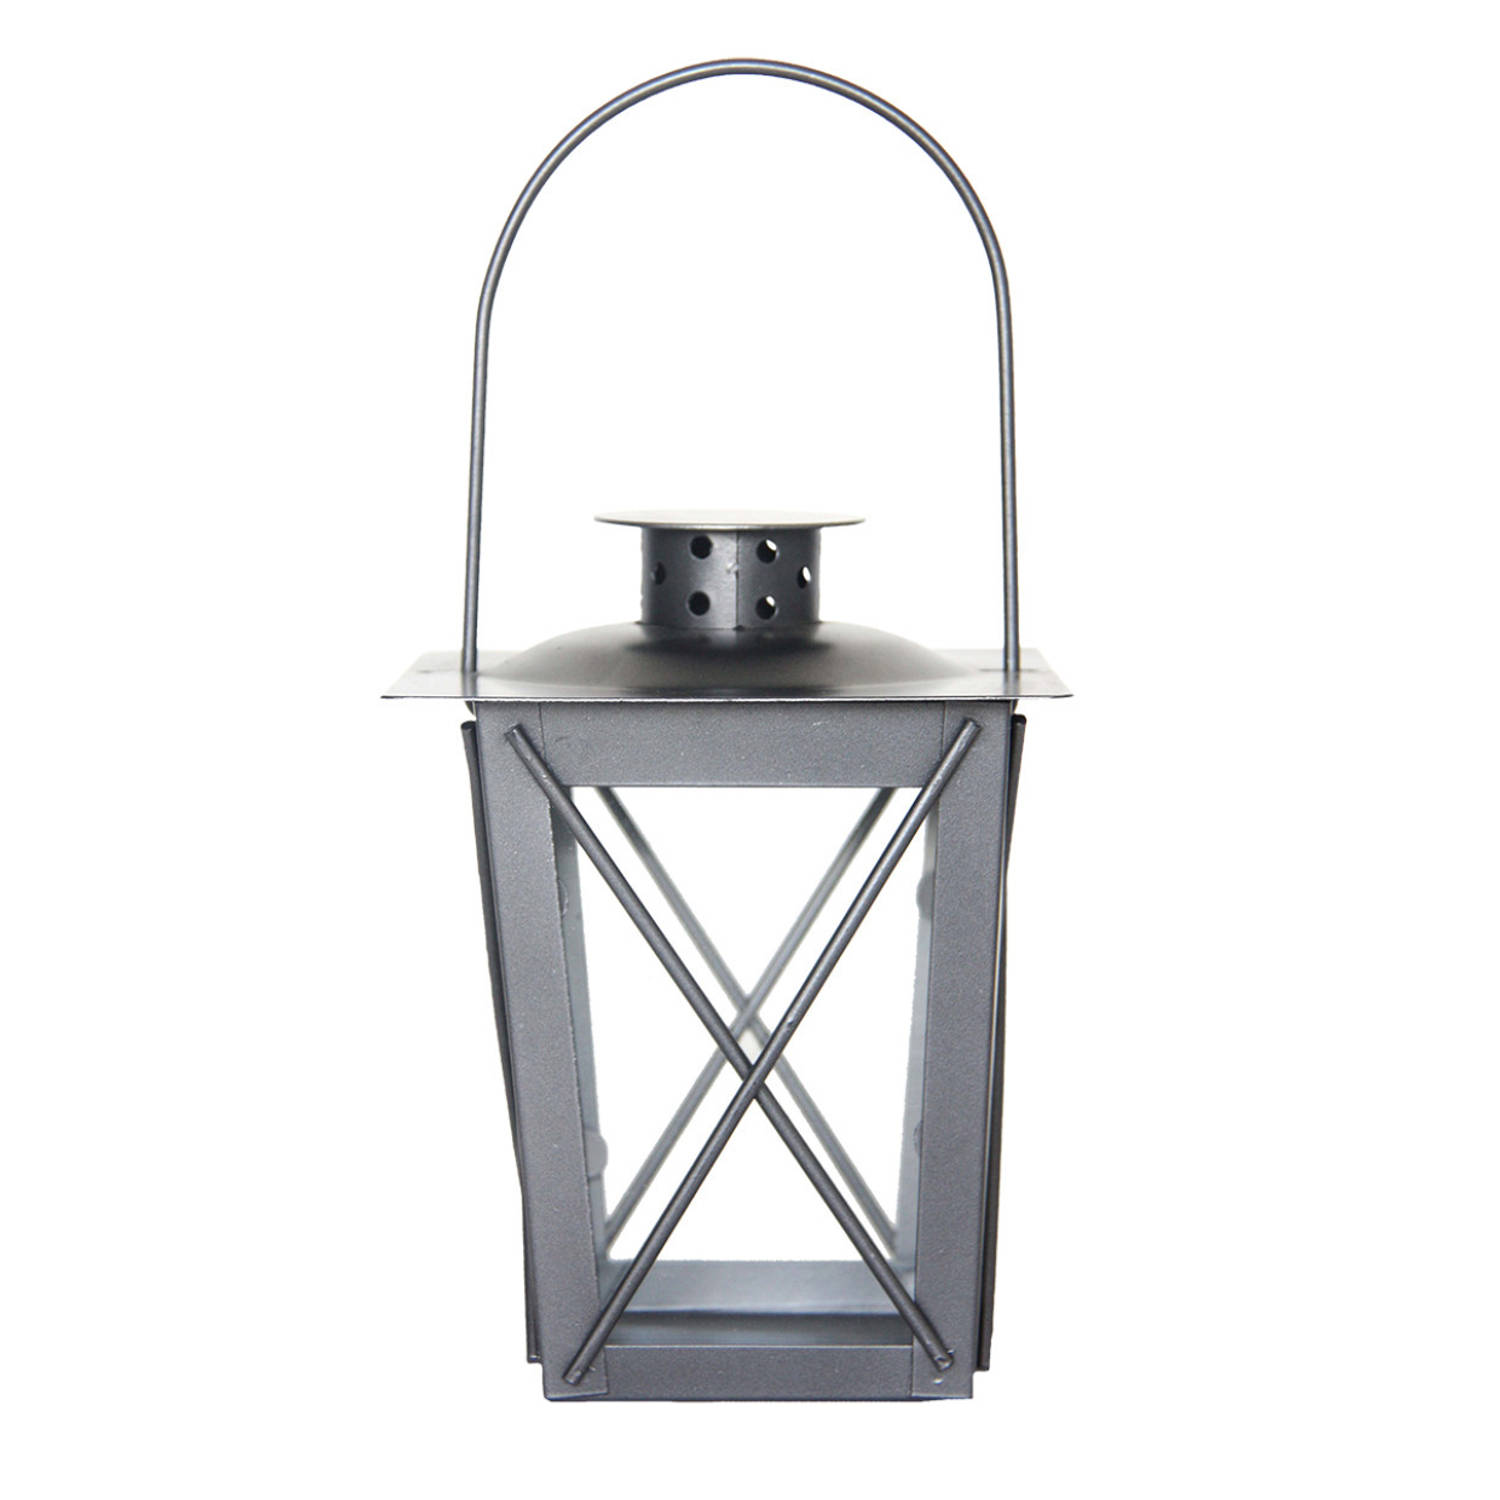 Zilveren lantaarn/windlicht van ijzer 12 x 12 x 16 cm - Lantaarns | Blokker